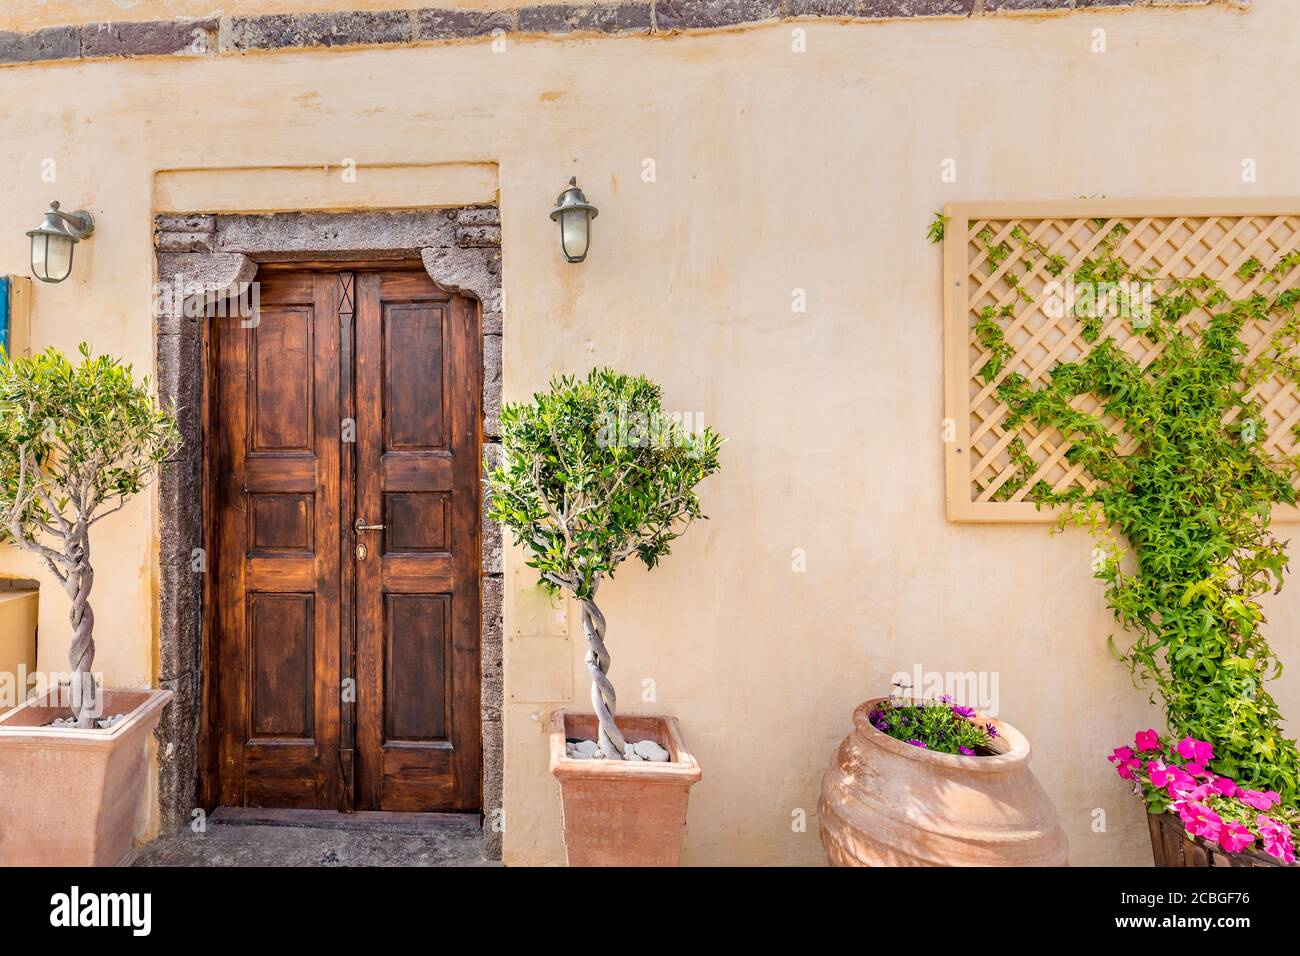 Viejas calles con encanto, sur de Francia, Provenza. Antigua puerta de  madera con flores buganvillas y plantas verdes en jarrones de cerámica  Fotografía de stock - Alamy